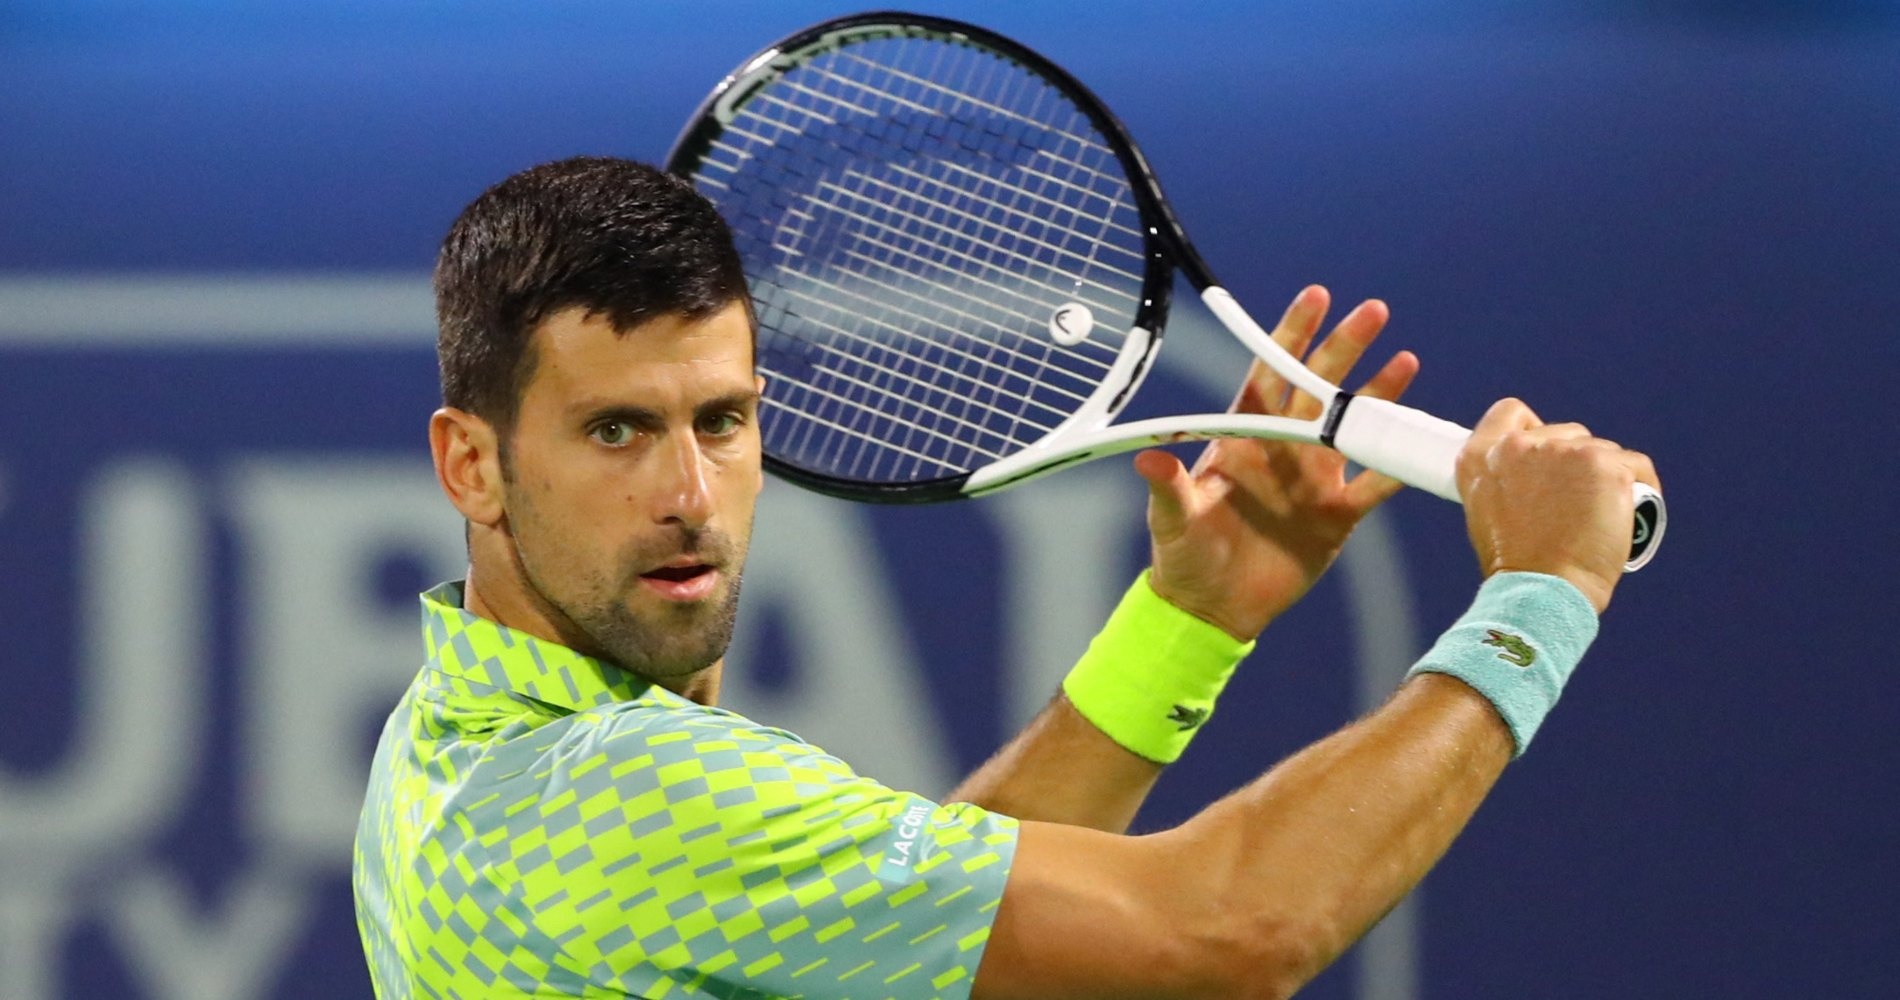 Tennis, ATP – Dubai Open 2023: Djokovic takes out Hurkacz - Tennis